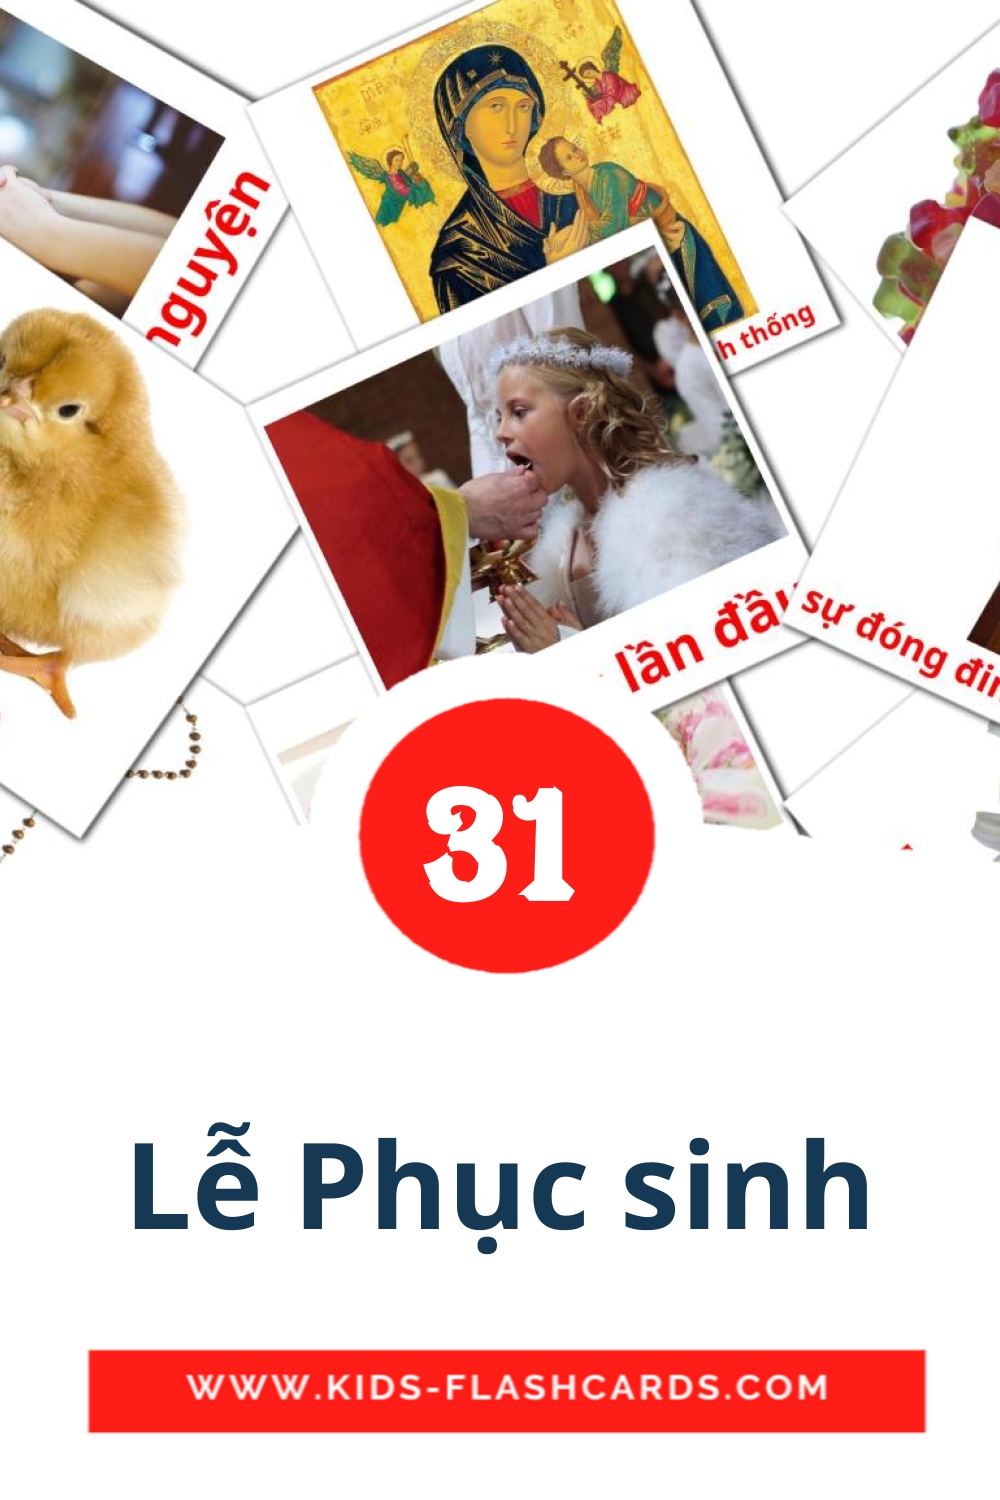 31 carte illustrate di Lễ Phục sinh per la scuola materna in vietnamita